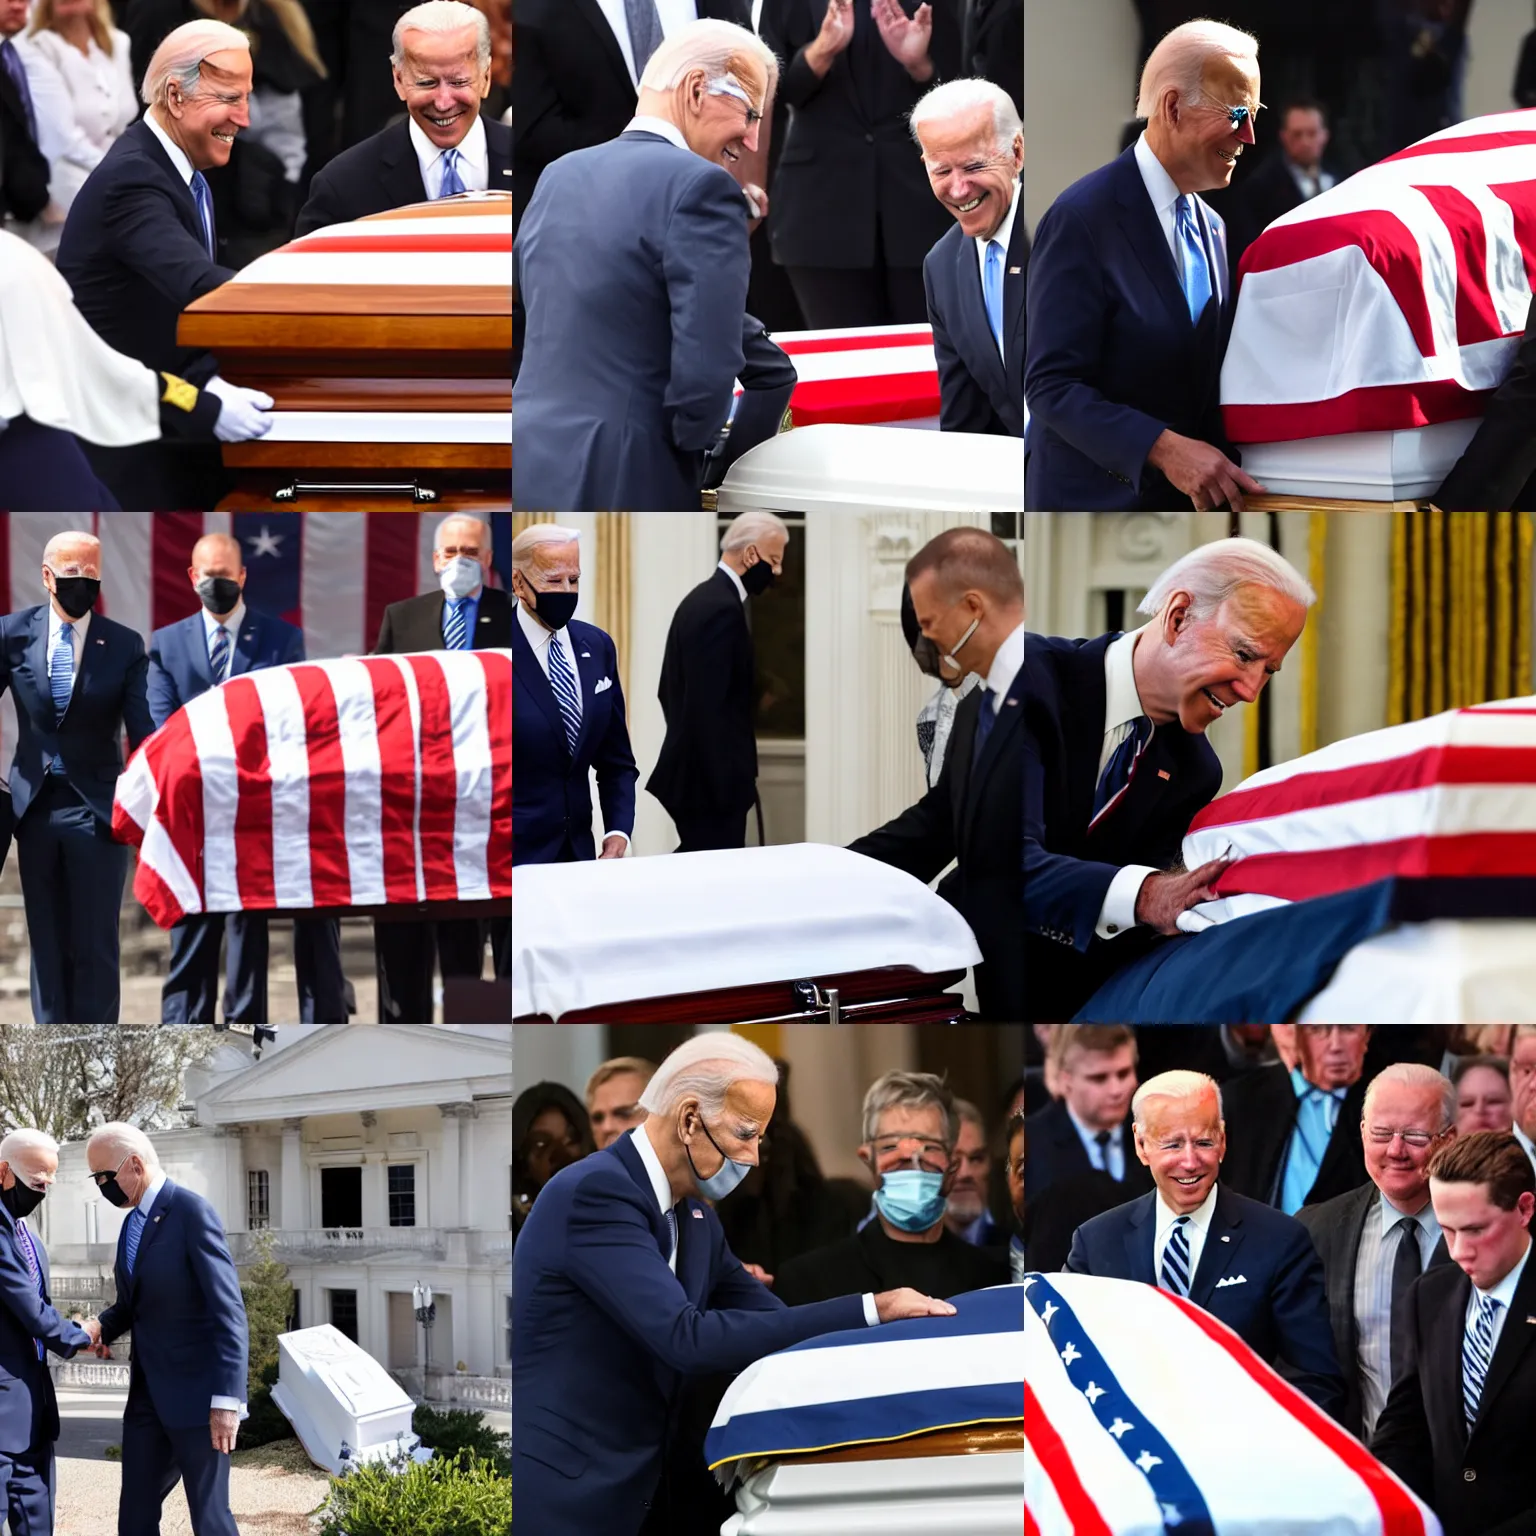 Prompt: joe biden shaking hand with corpse in casket